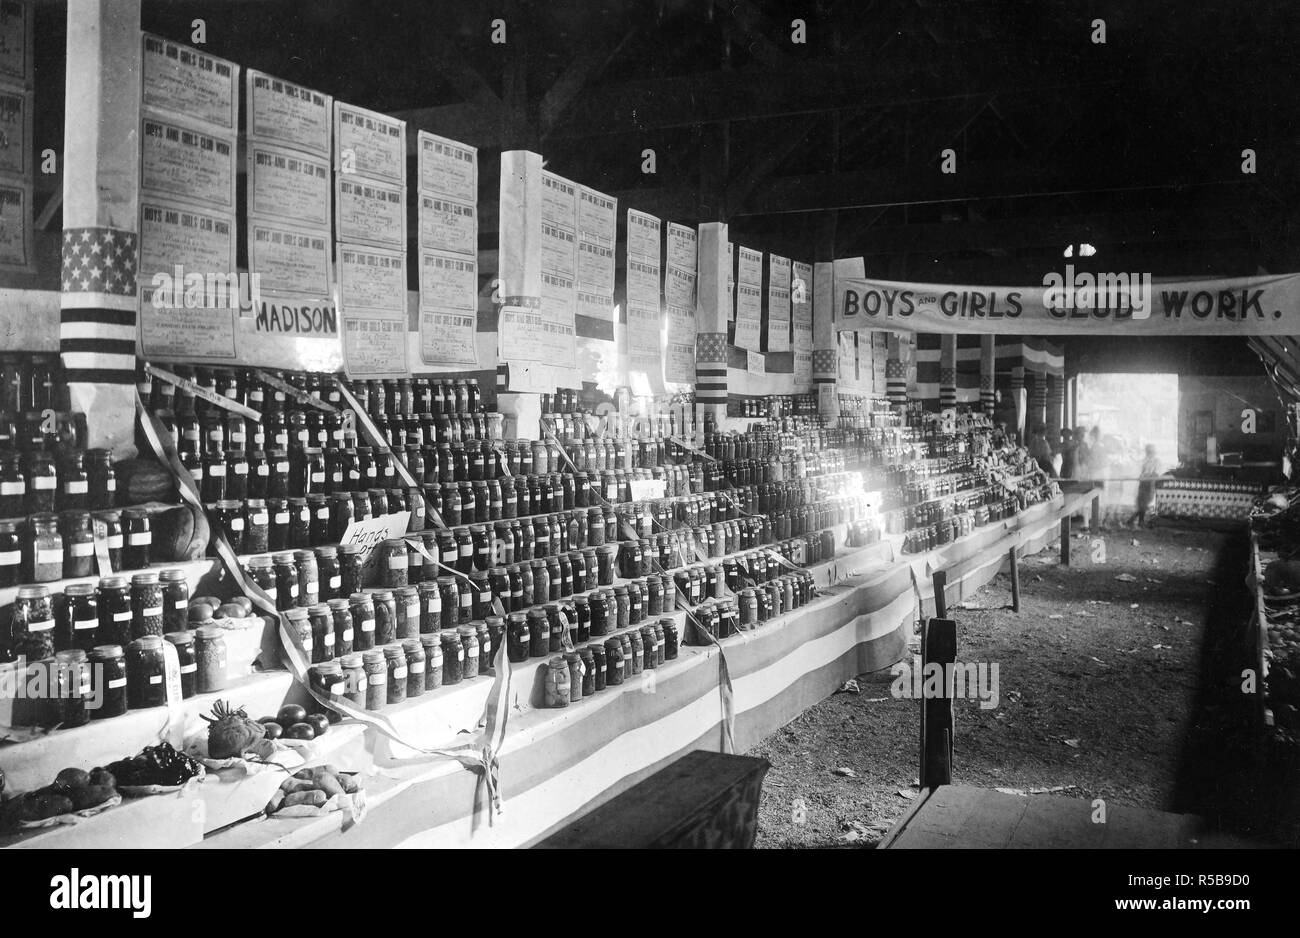 La somministrazione di cibo - Campagna Anti-Waste - guerra le attività di rilievo in Indiana. Ragazzi e Ragazze Club lavoro, Montgomery County ca. 1916-1918 Foto Stock